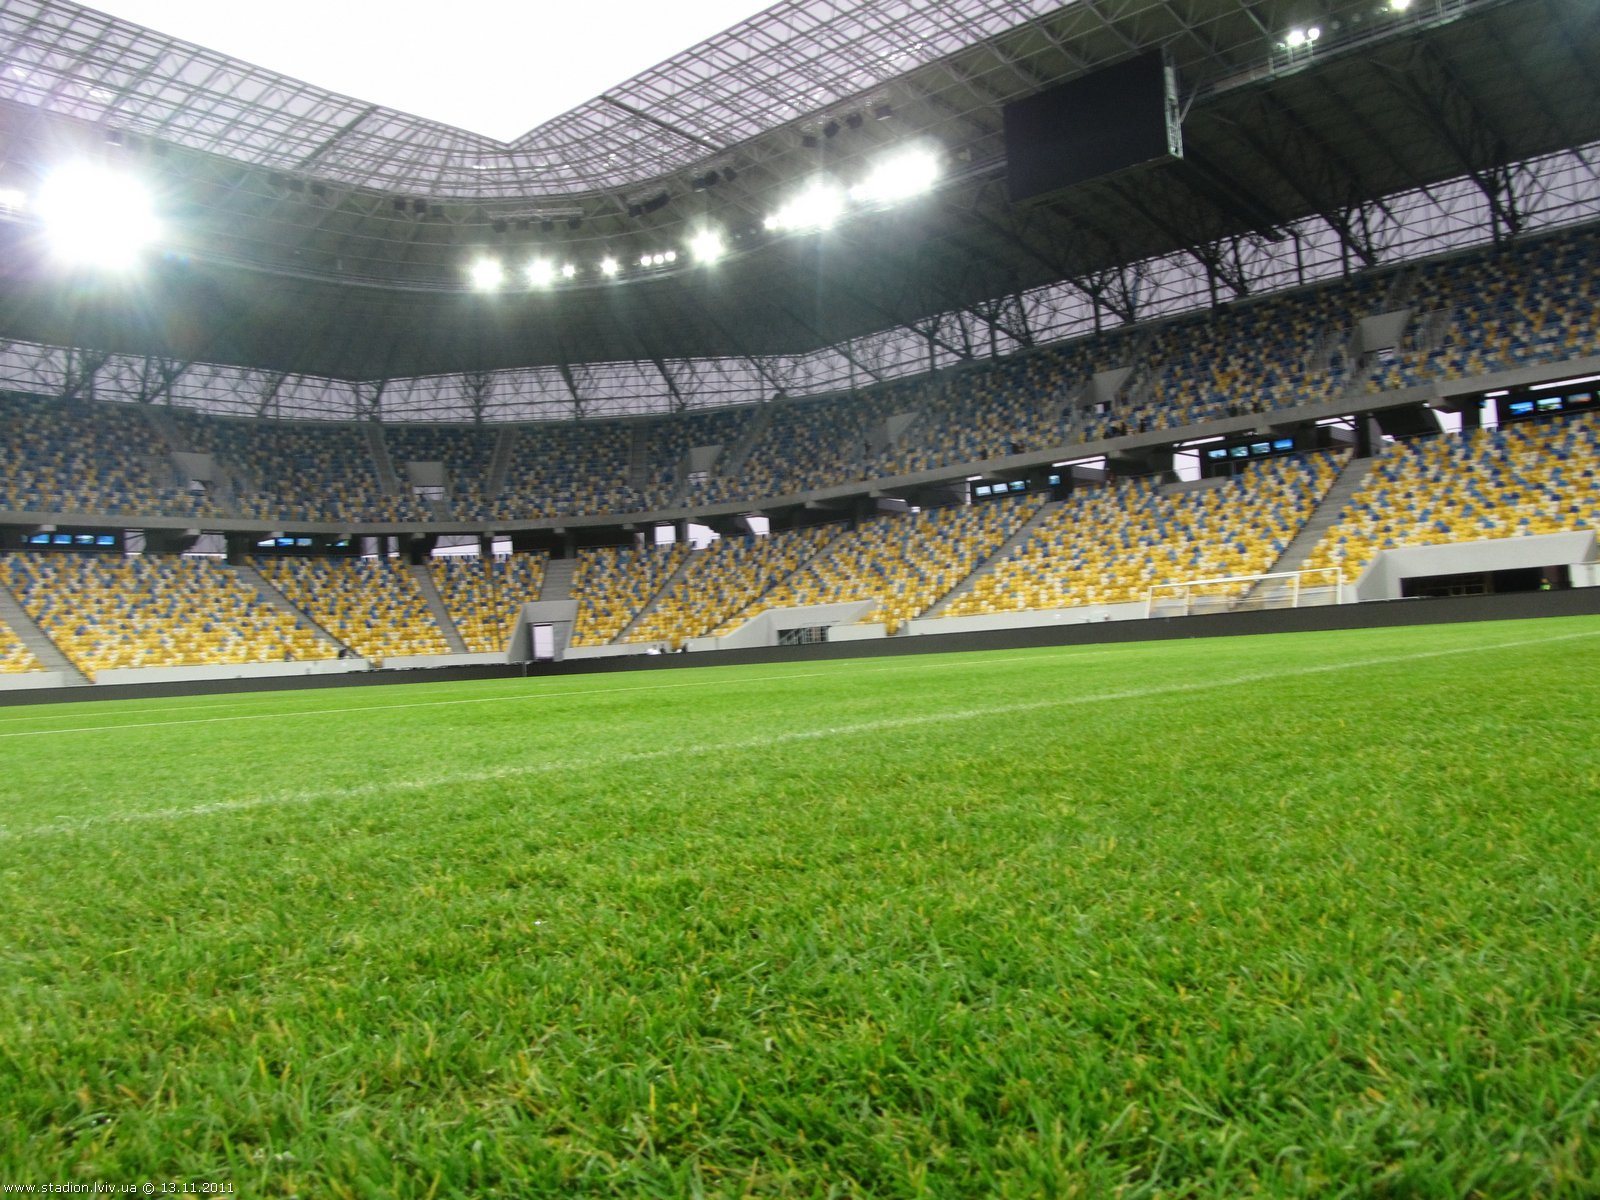 Паркування біля стадіону Арена Львів під час матчу коштуватиме 20 грн.